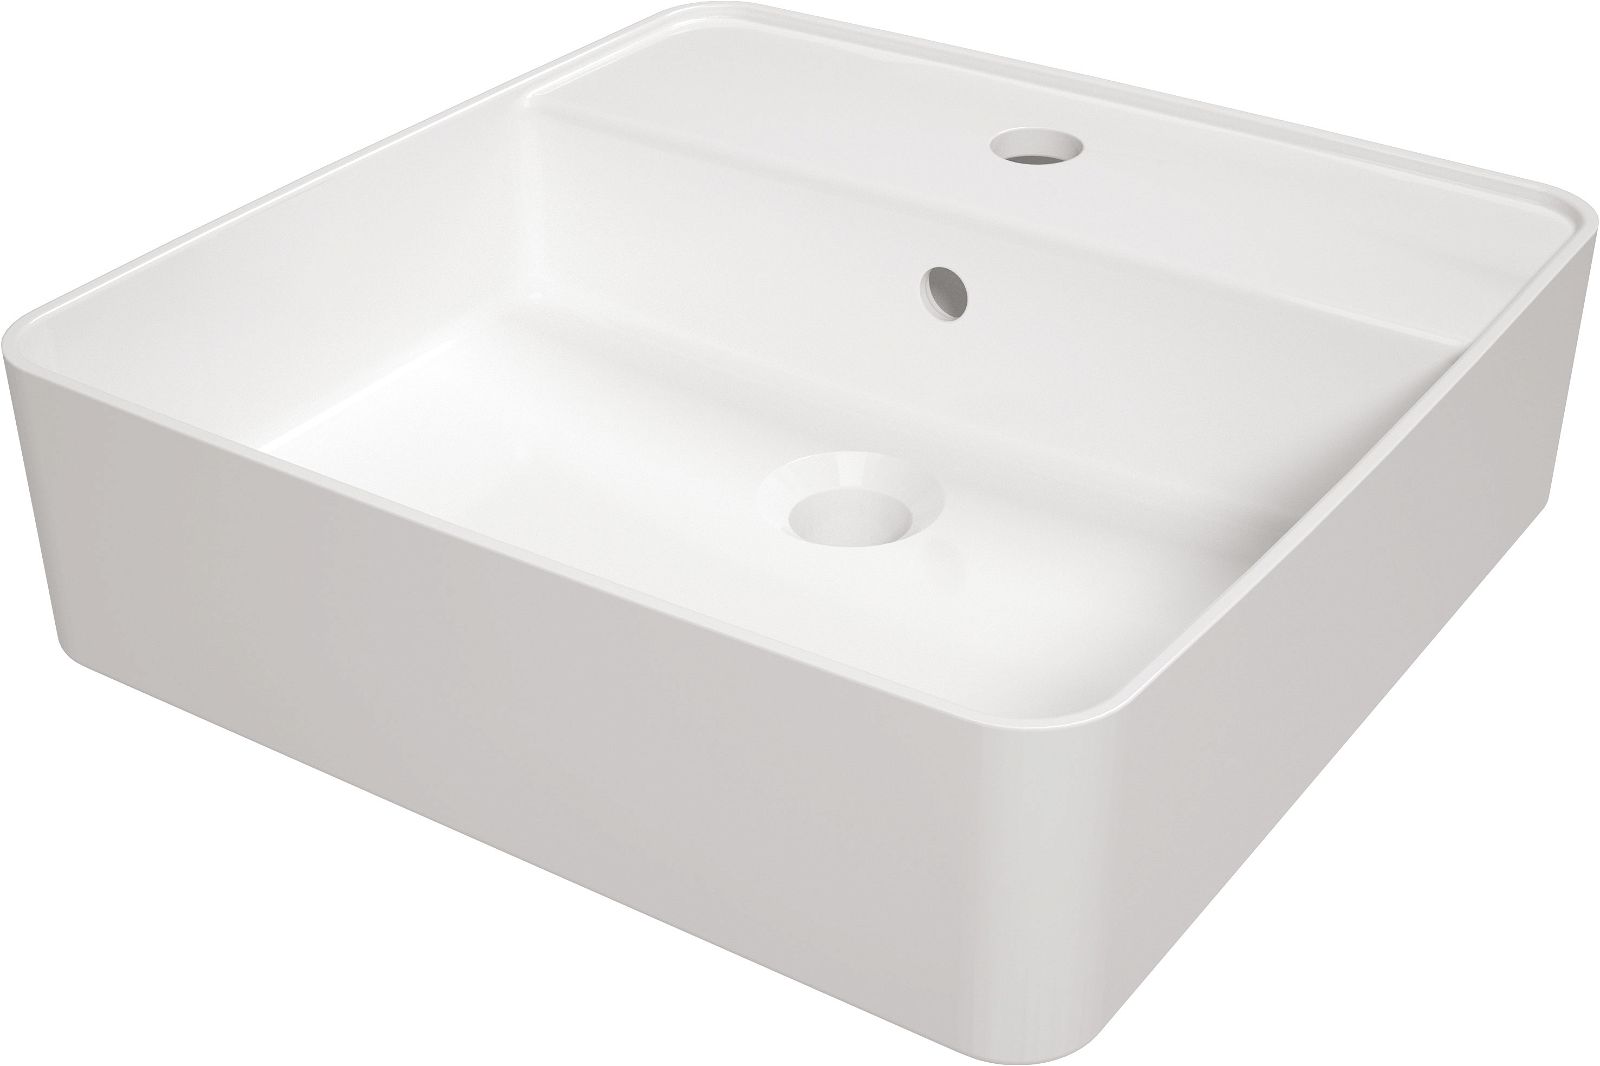 Ceramic washbasin, countertop, with tap shelf - CGS_6U4B - Główne zdjęcie produktowe